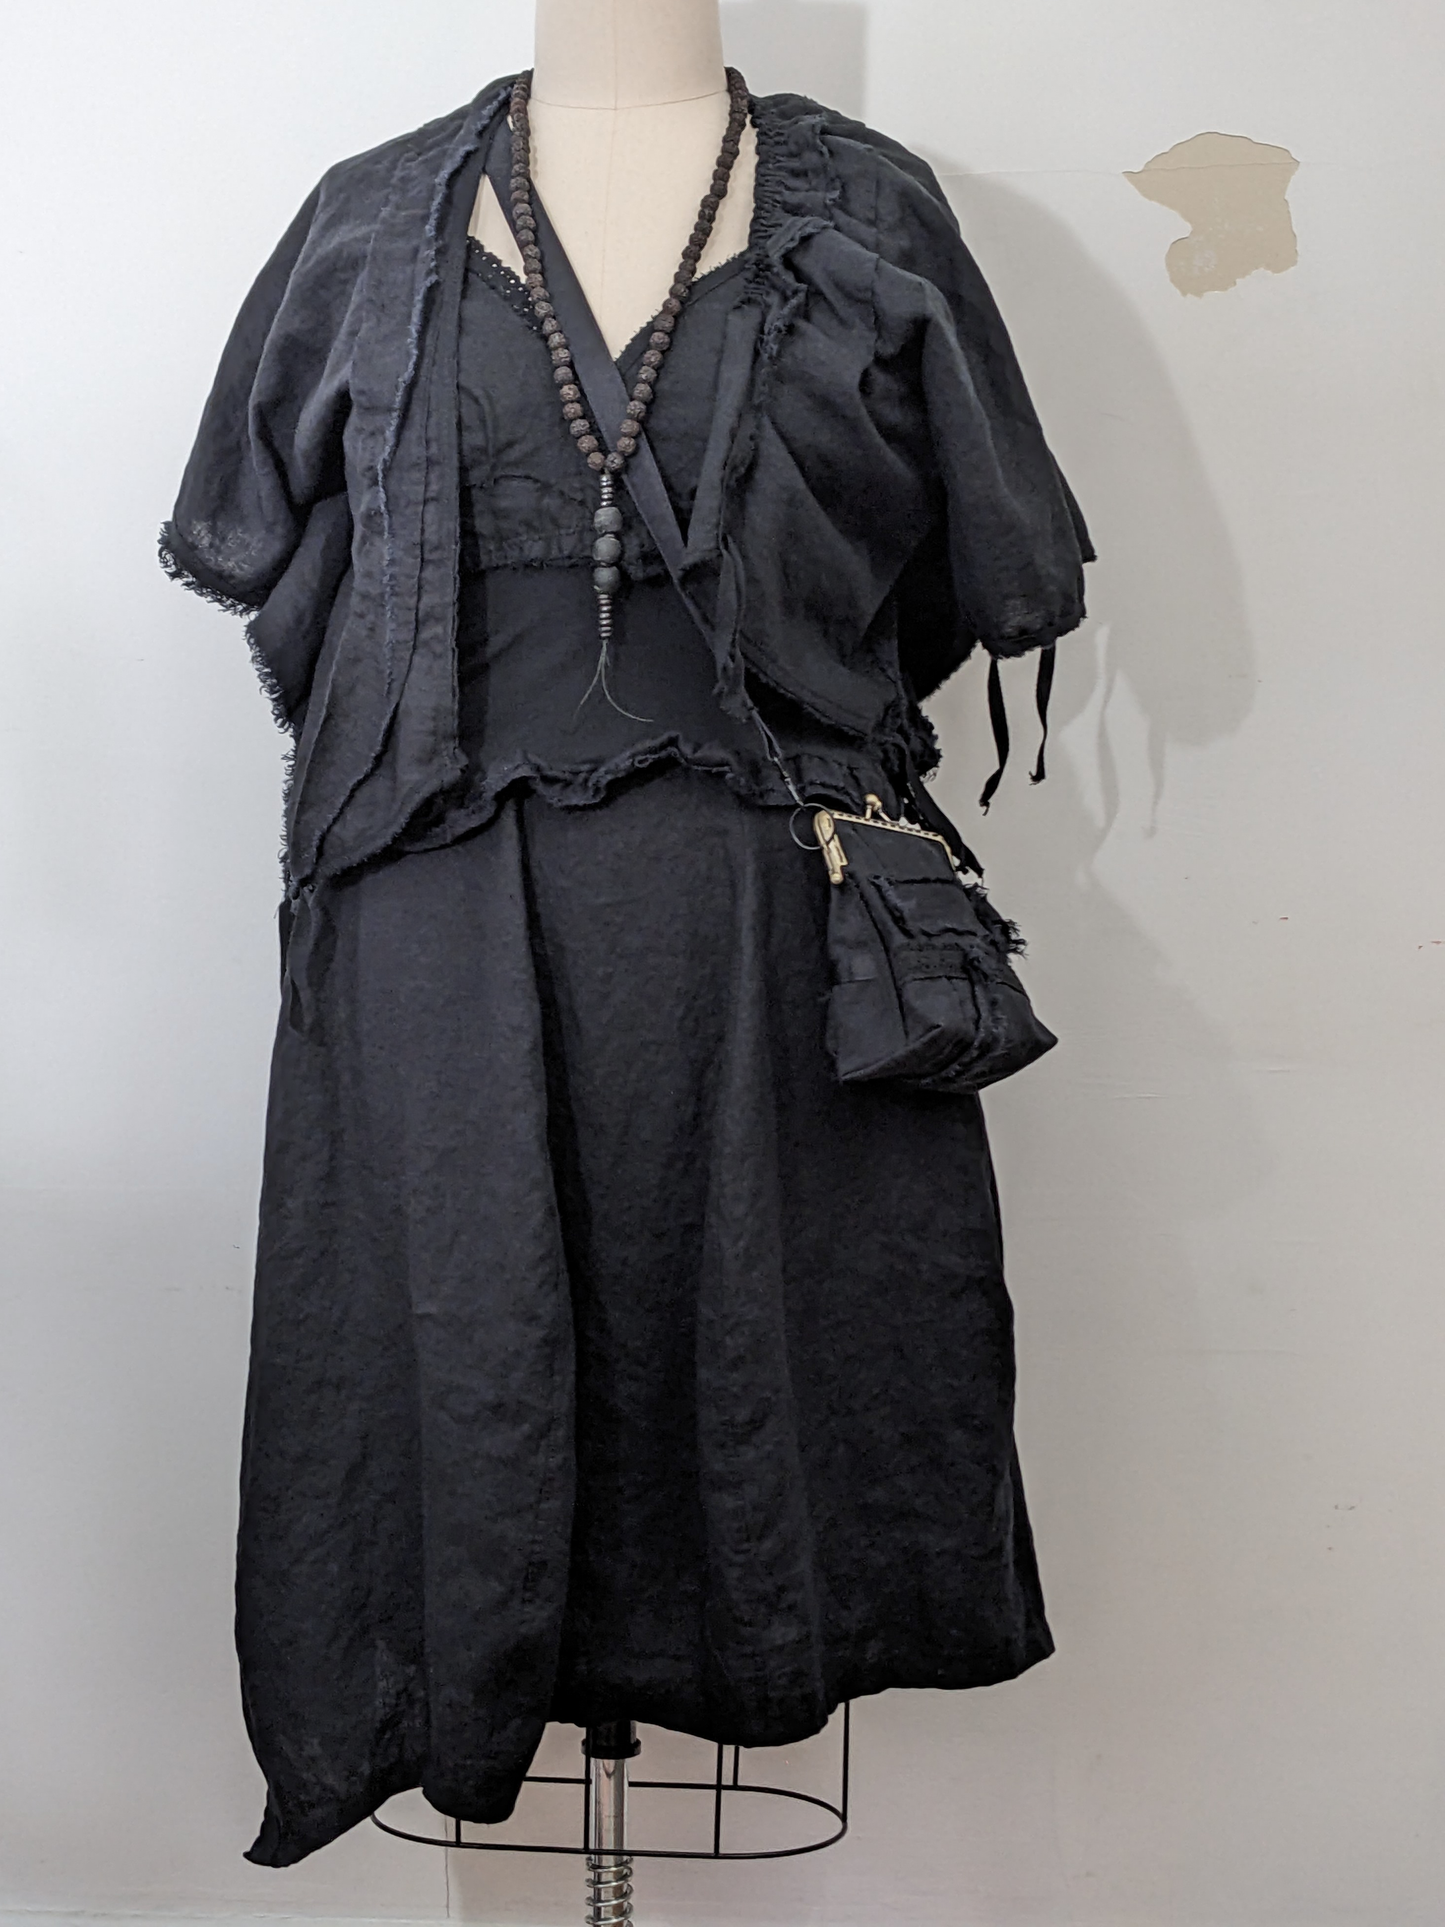 secret lentil black skirt, camisole, jacket, necklace and bag